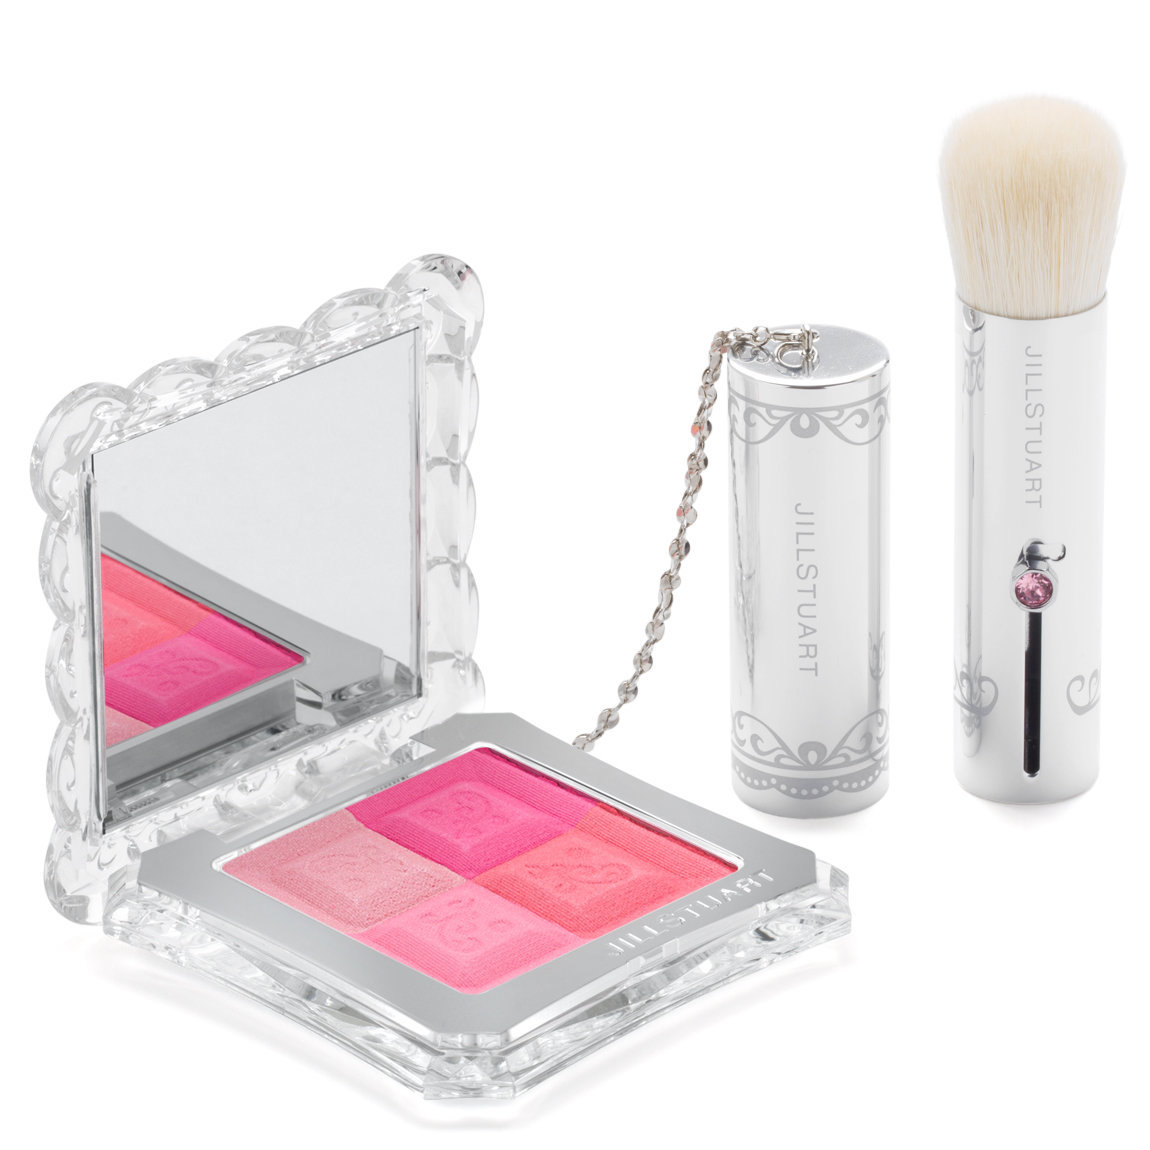 JILL STUART Beauty Mix Blush Compact N 01 | Beautylish